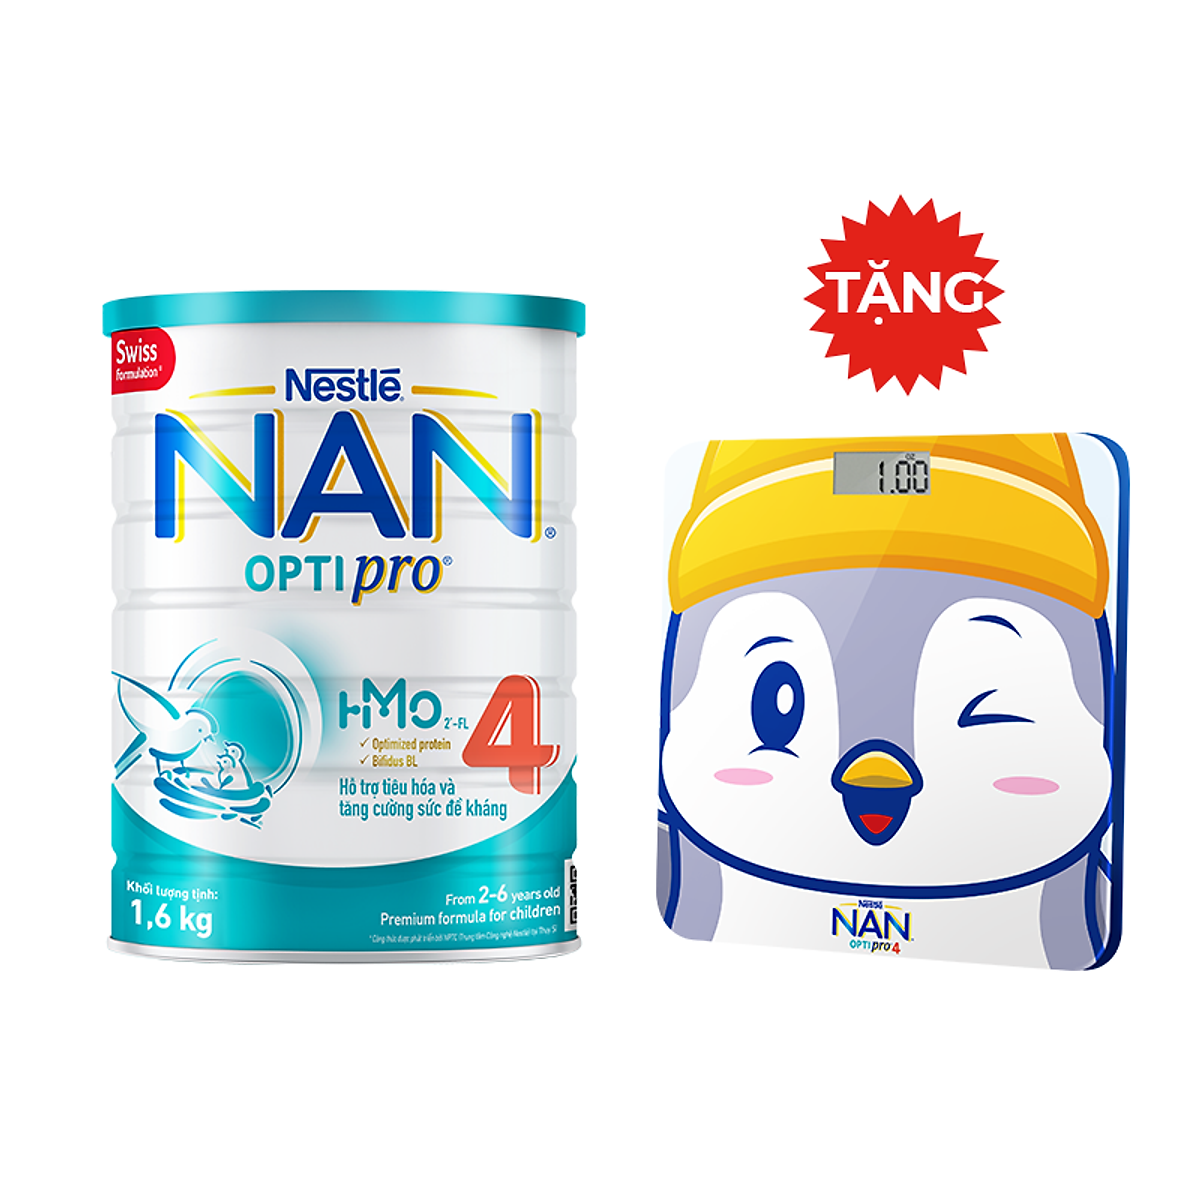 Sữa Bột Nestlé NAN OPTIPRO HM-O 4 1.6kg - Tặng Cân điện tử hình bất kỳ